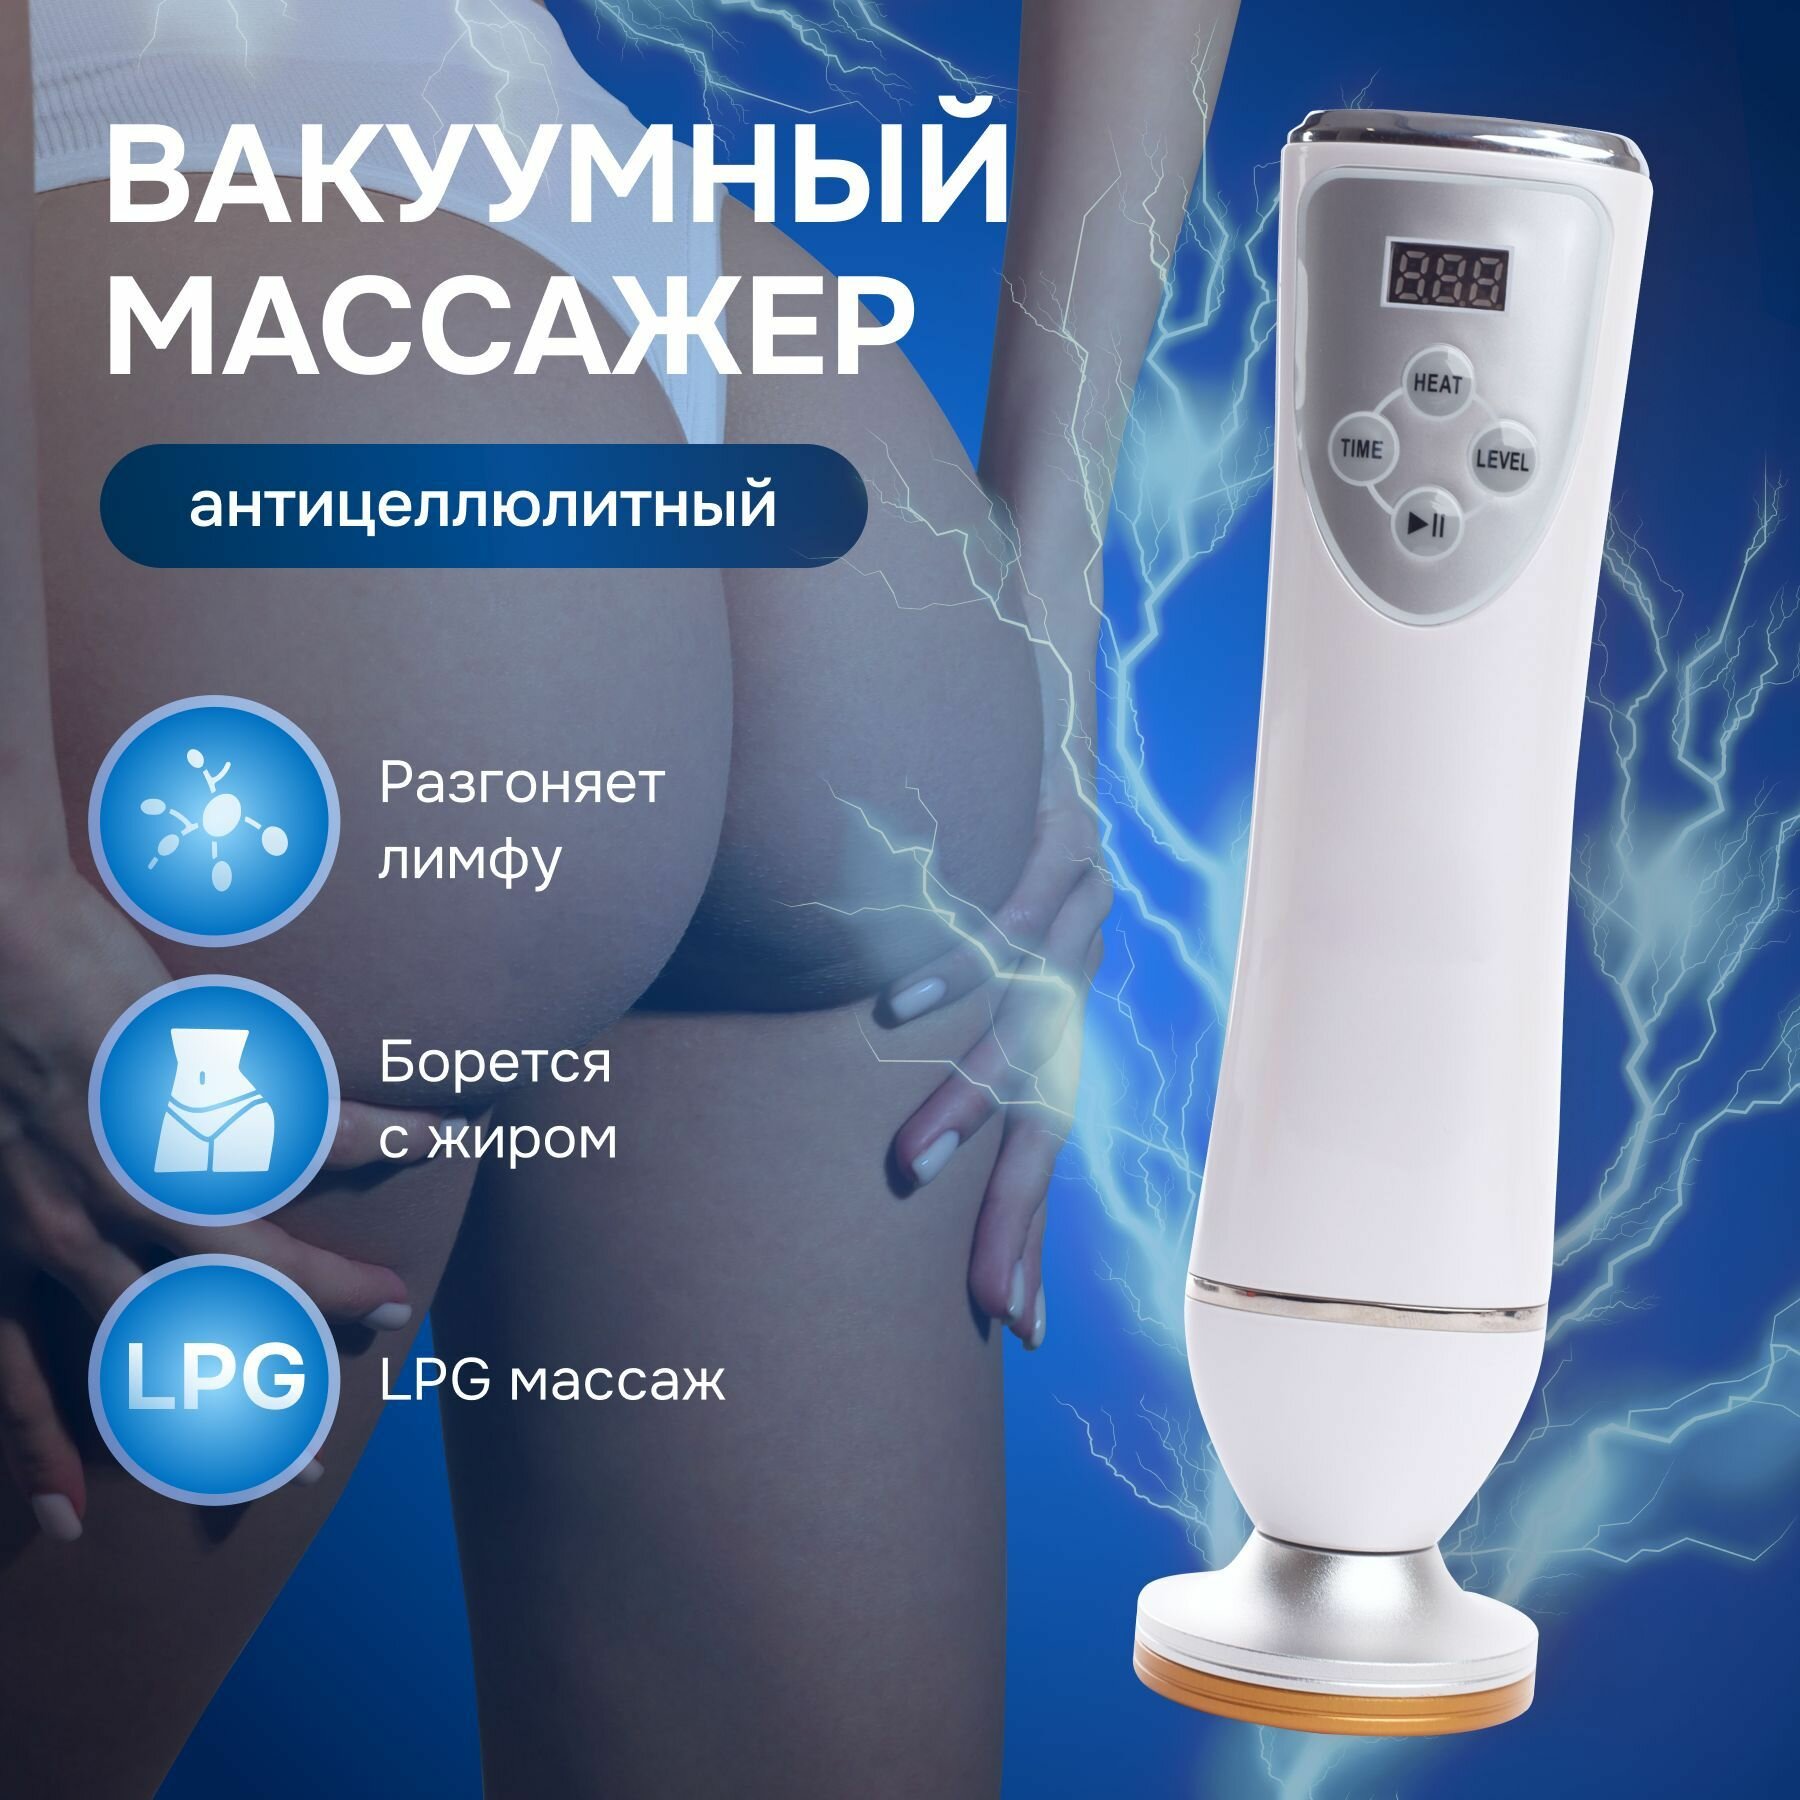 Массажер для тела, Антицеллюлитный вакуумный массажер /S. PEACH/ LPG для тела, ног, лица для похудения